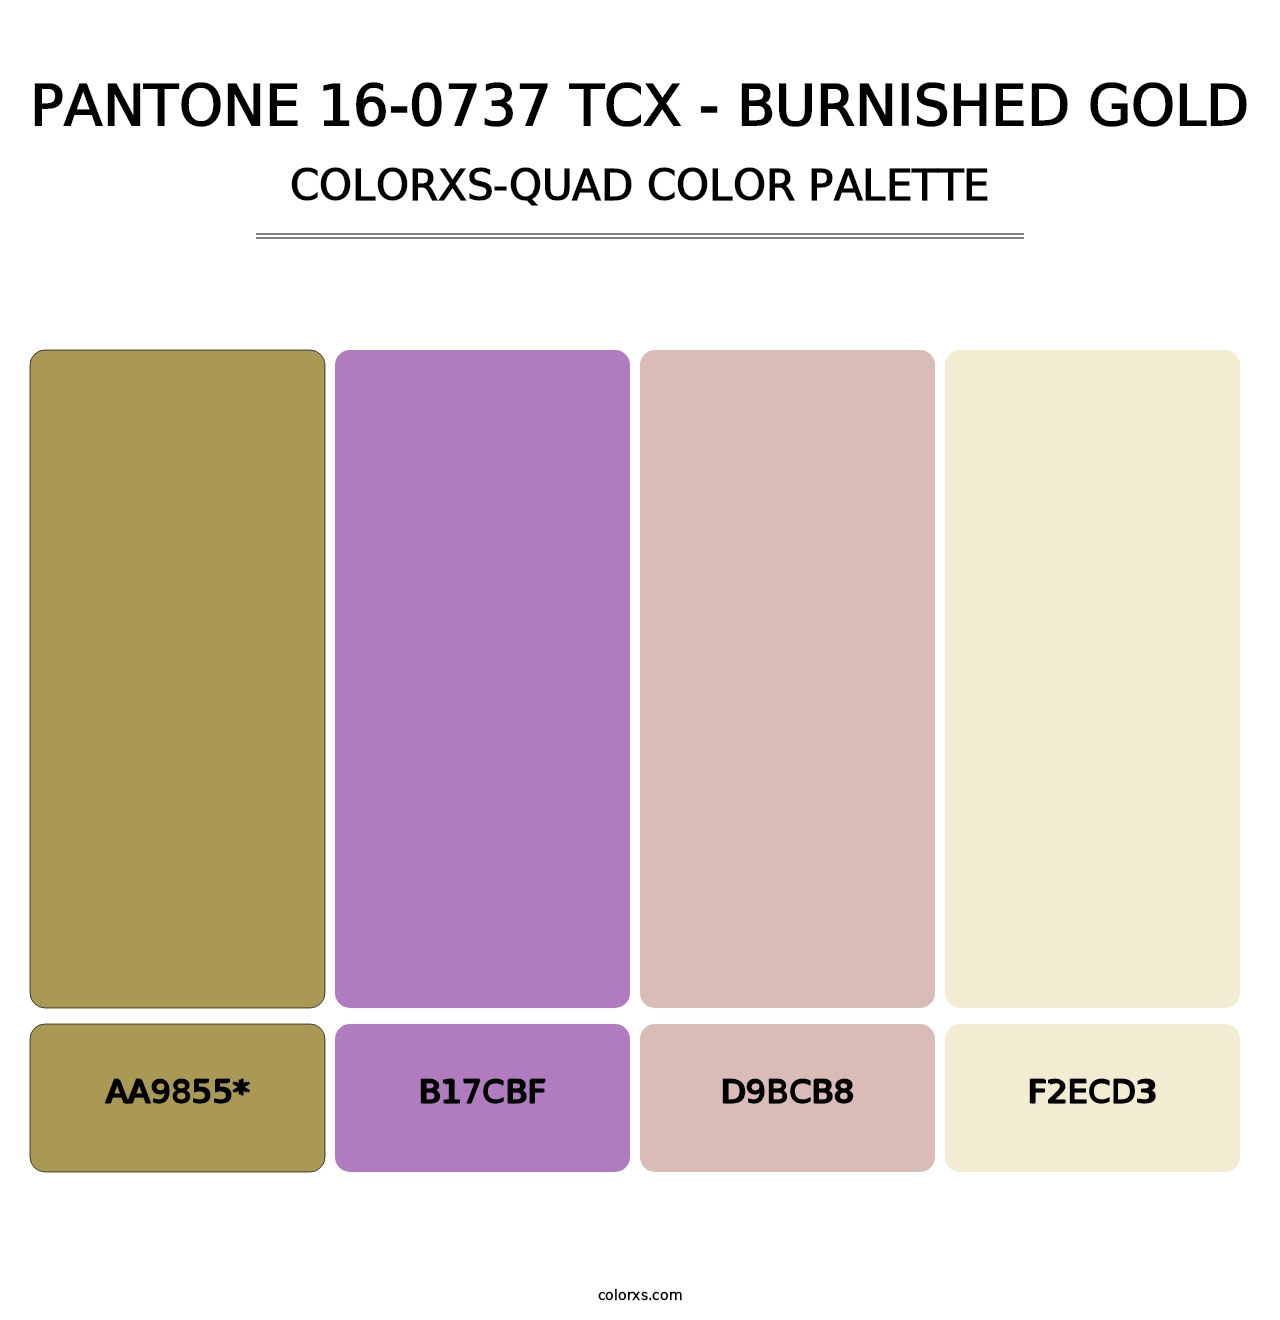 PANTONE 16-0737 TCX - Burnished Gold - Colorxs Quad Palette